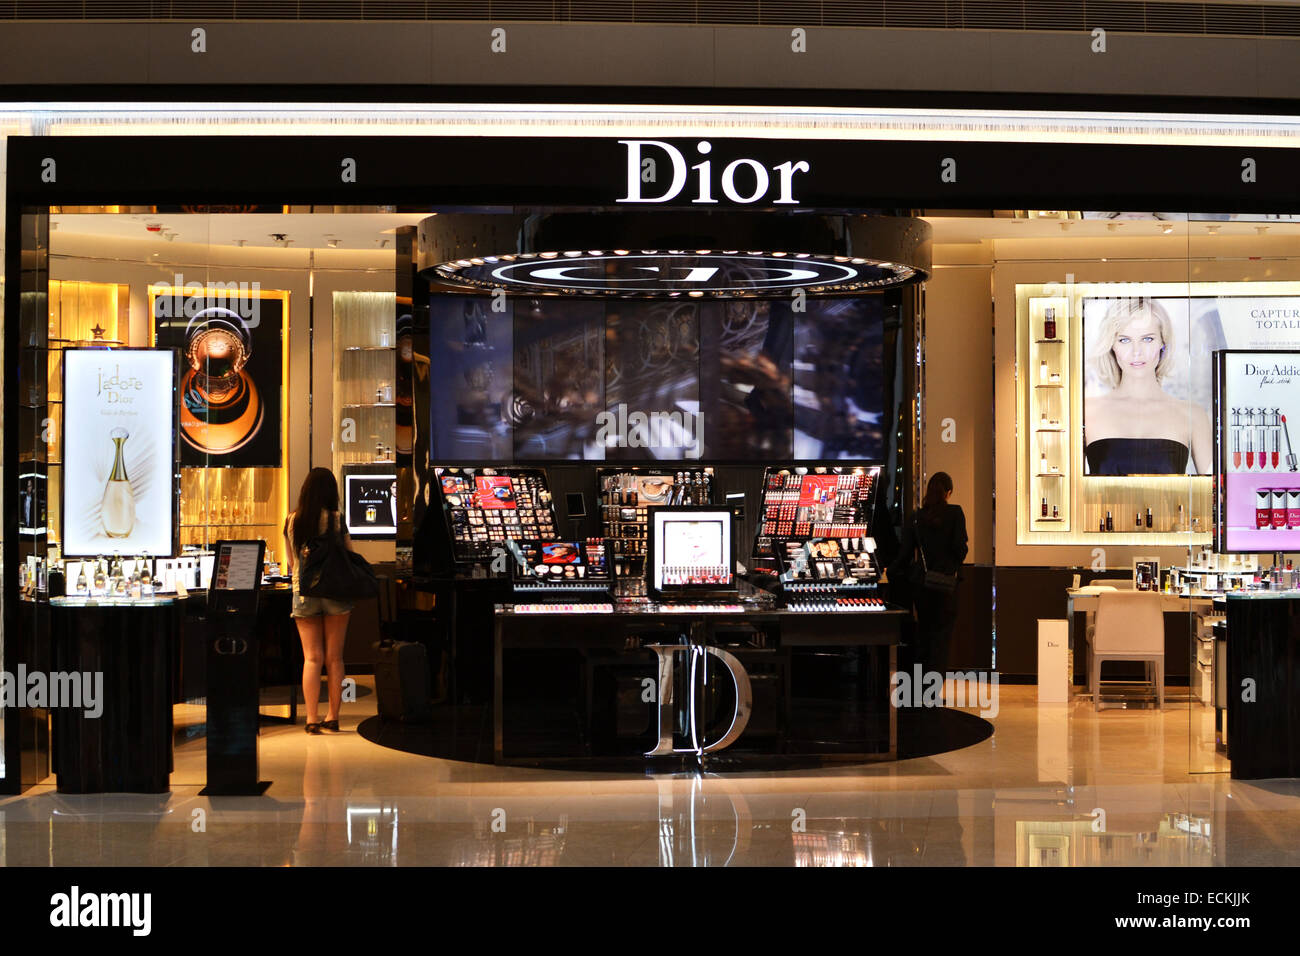 dior makeup shop